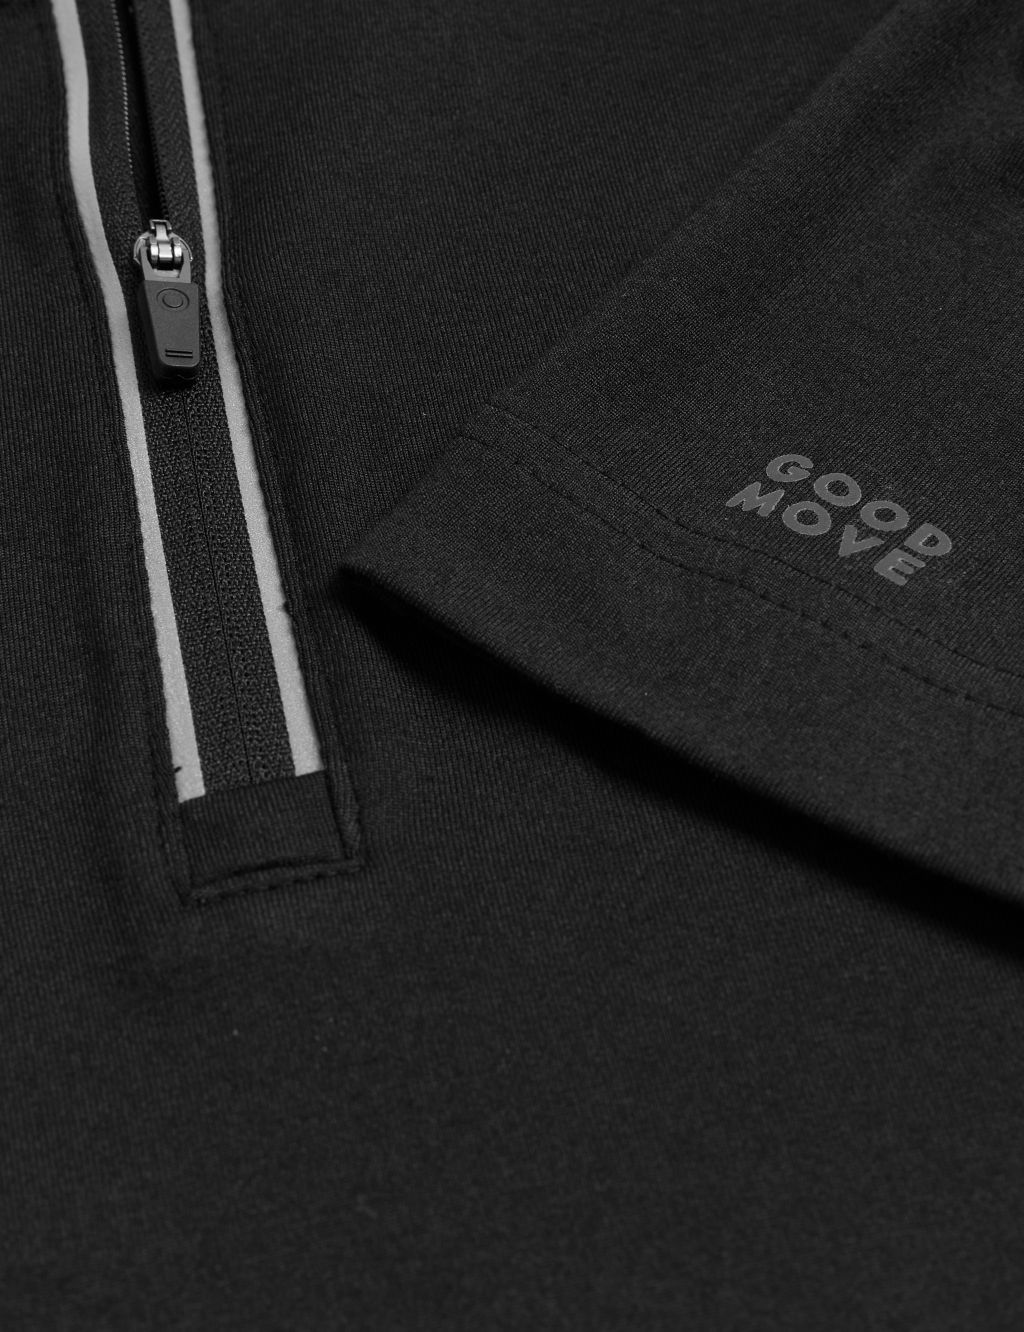 Half Zip Long Sleeve Top image 7